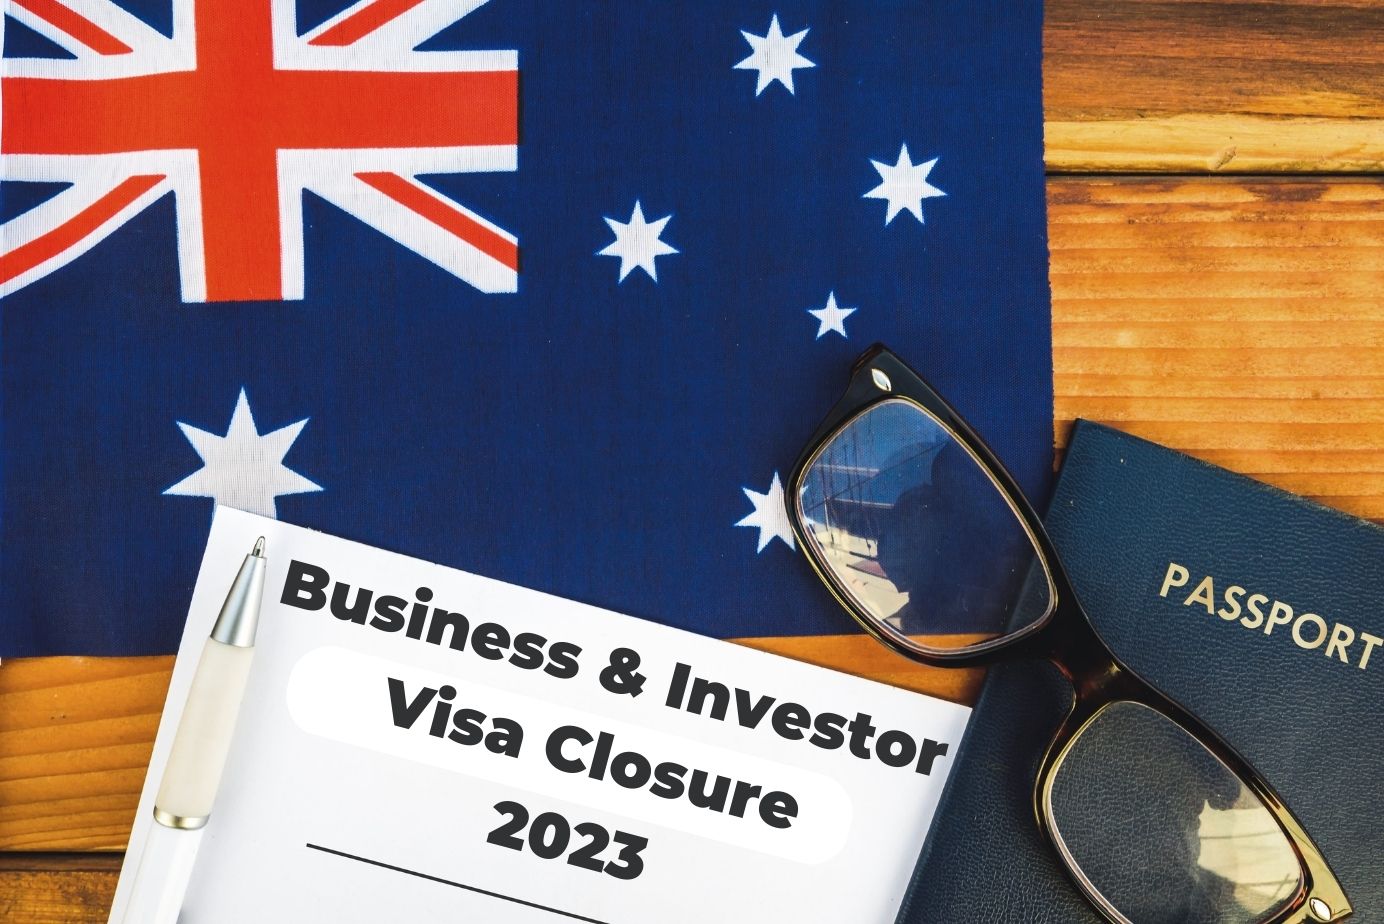 Business visa 188 Australia closure in 2023 